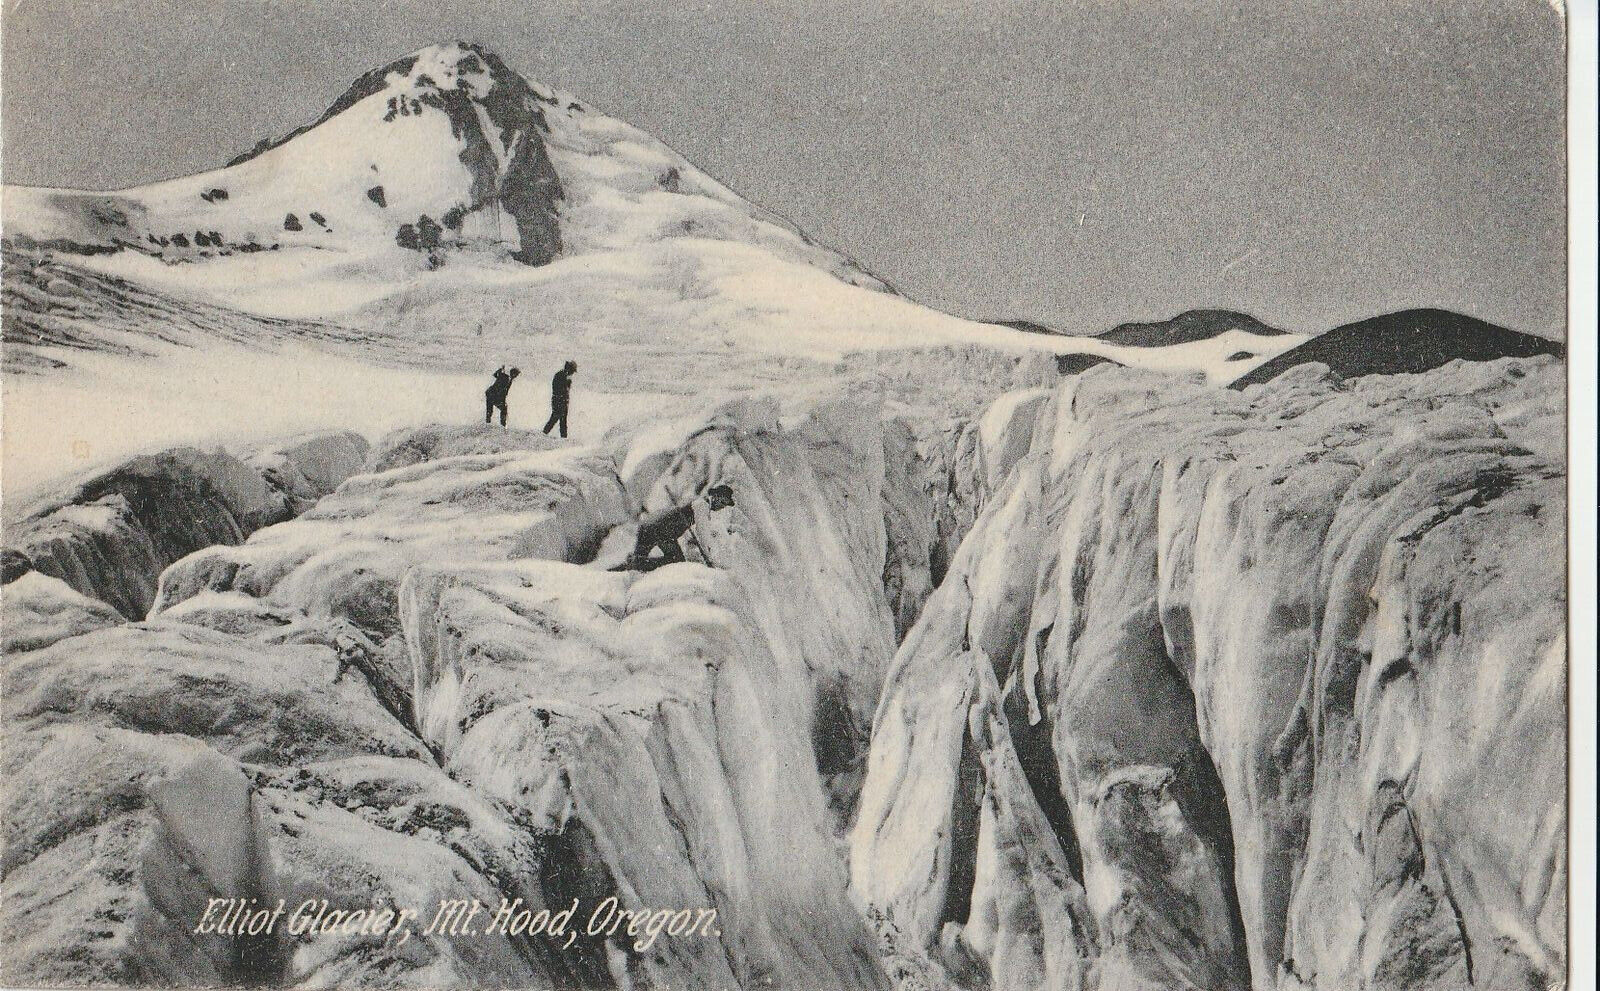 VINTAGE POSTCARD ELLIOT GLACIER MOUNT HOOD OREGON POSTED IN 1909 FRESH